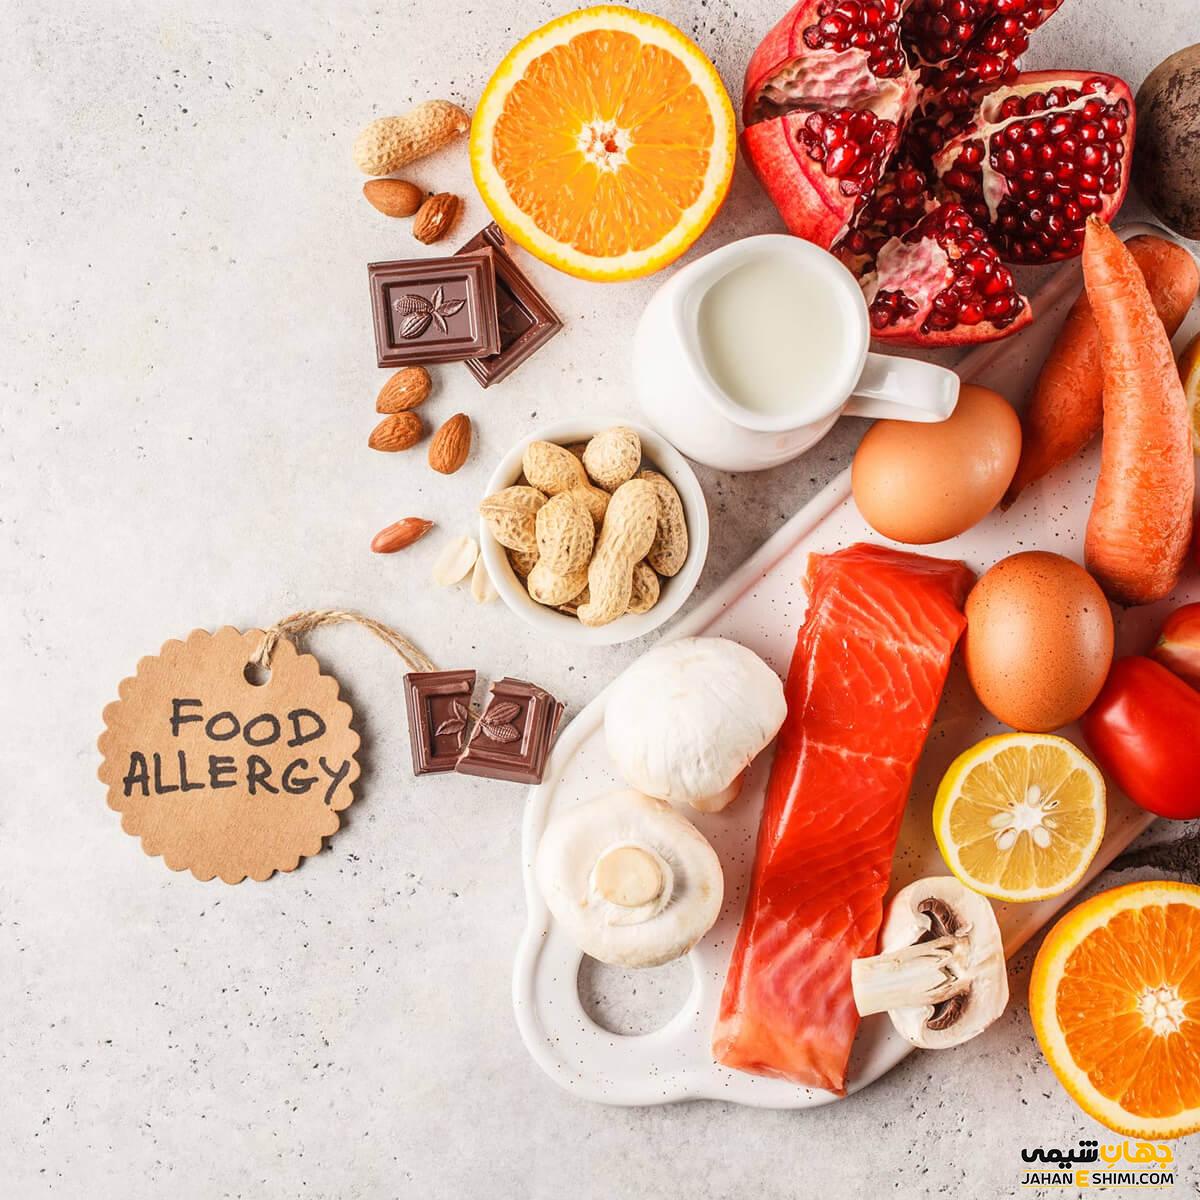 10 آلرژی غذایی پرخطر | دارو و درمان آلرژی غذایی